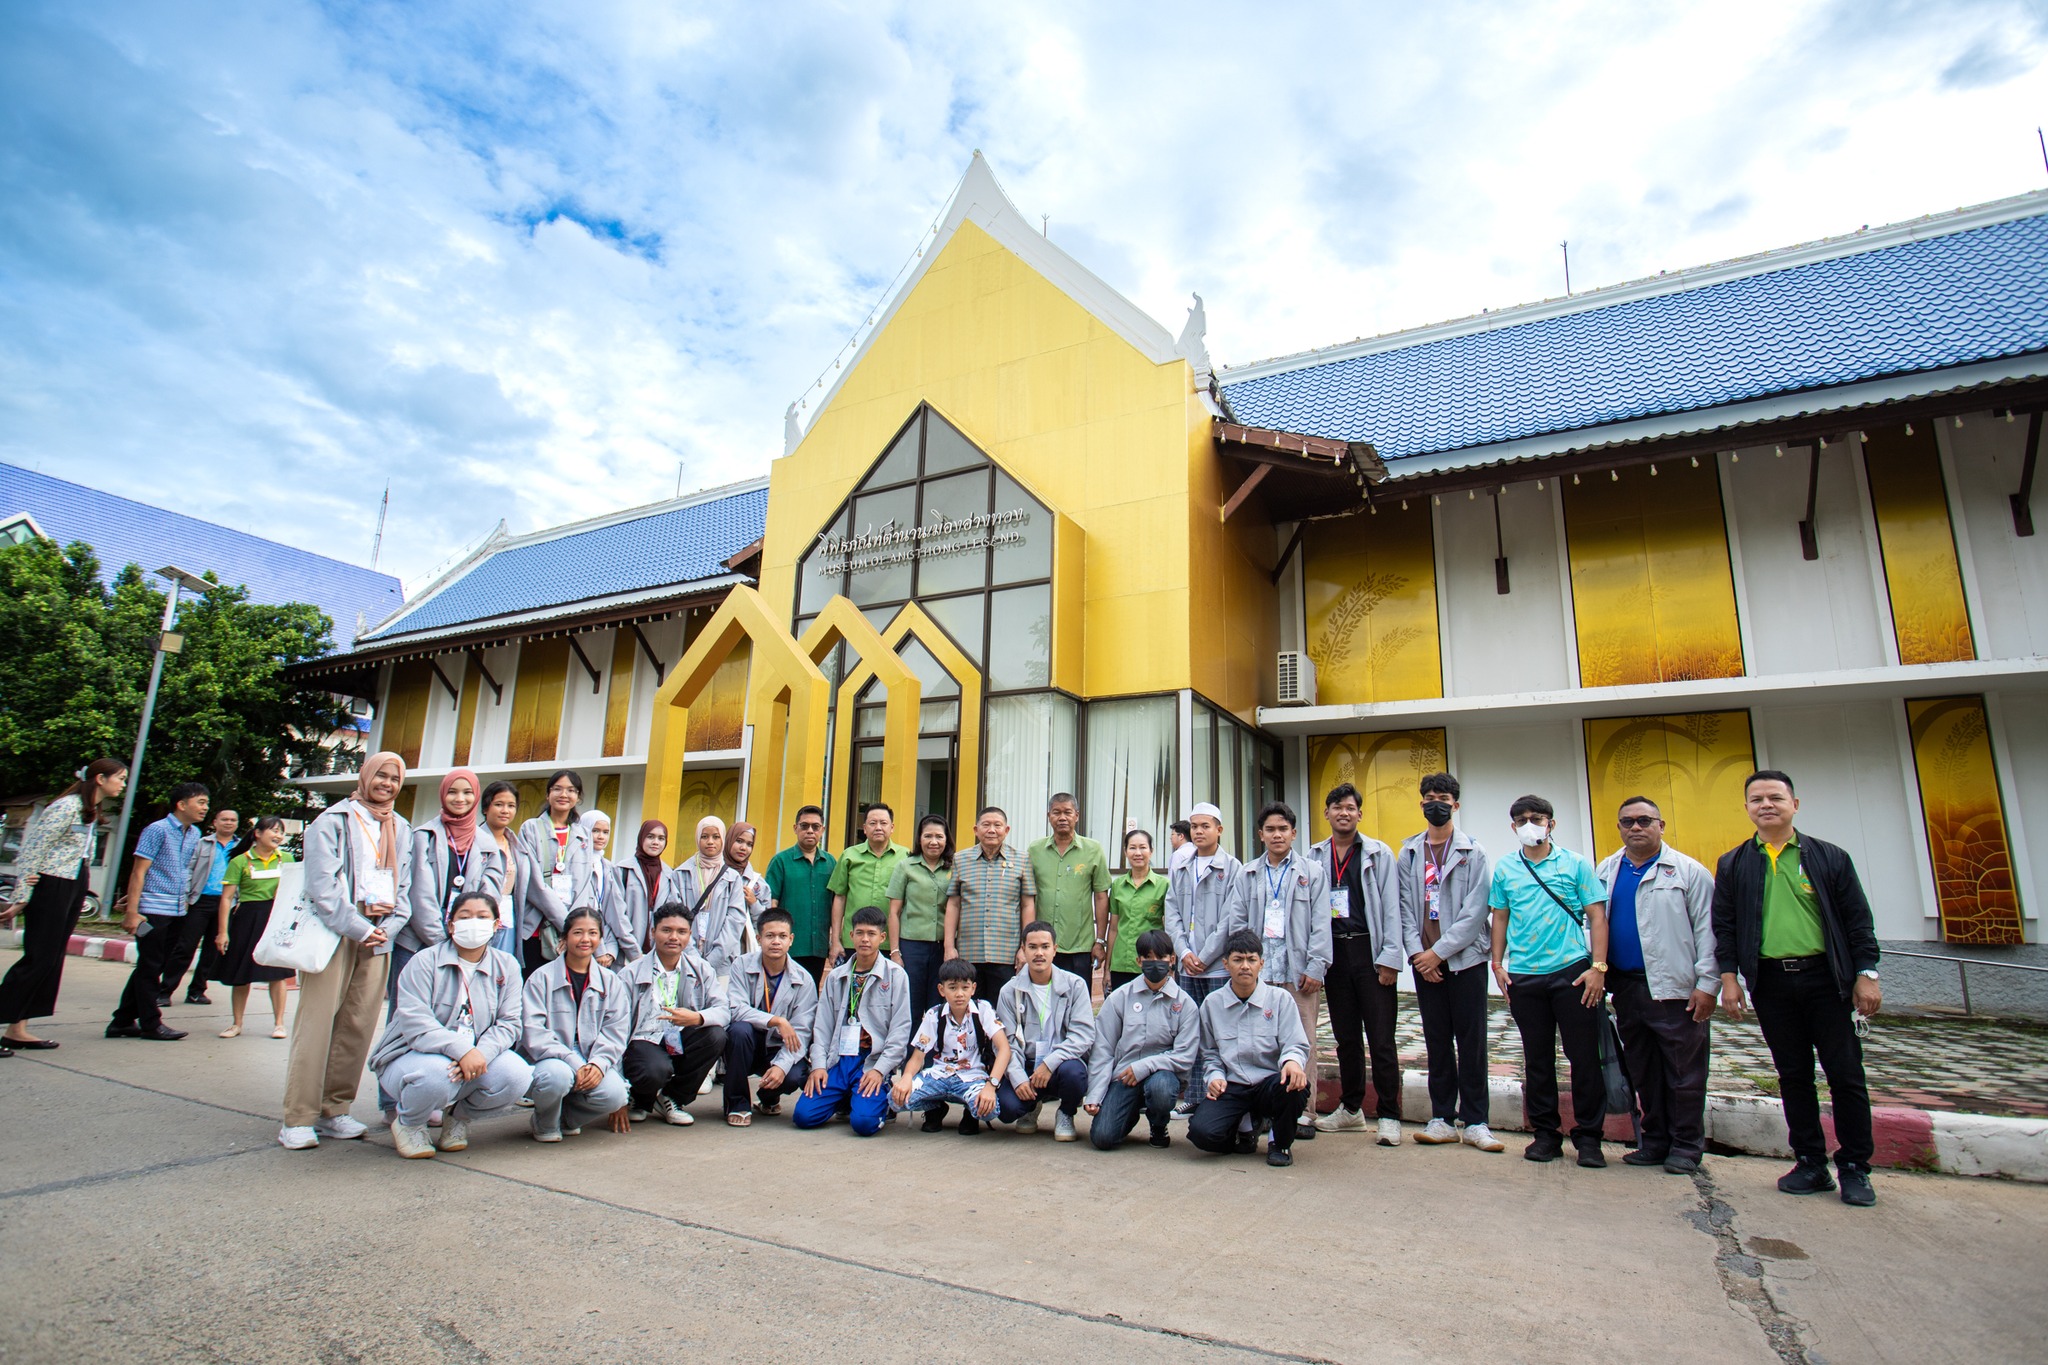 ต้อนรับคณะเยาวชนโครงการ “สานใจไทย สู่ใจใต้” รุ่นที่ ๔๑ ทัศนศึกษาเพื่อแลกเปลี่ยนเรียนรู้พหุวัฒนธรรม